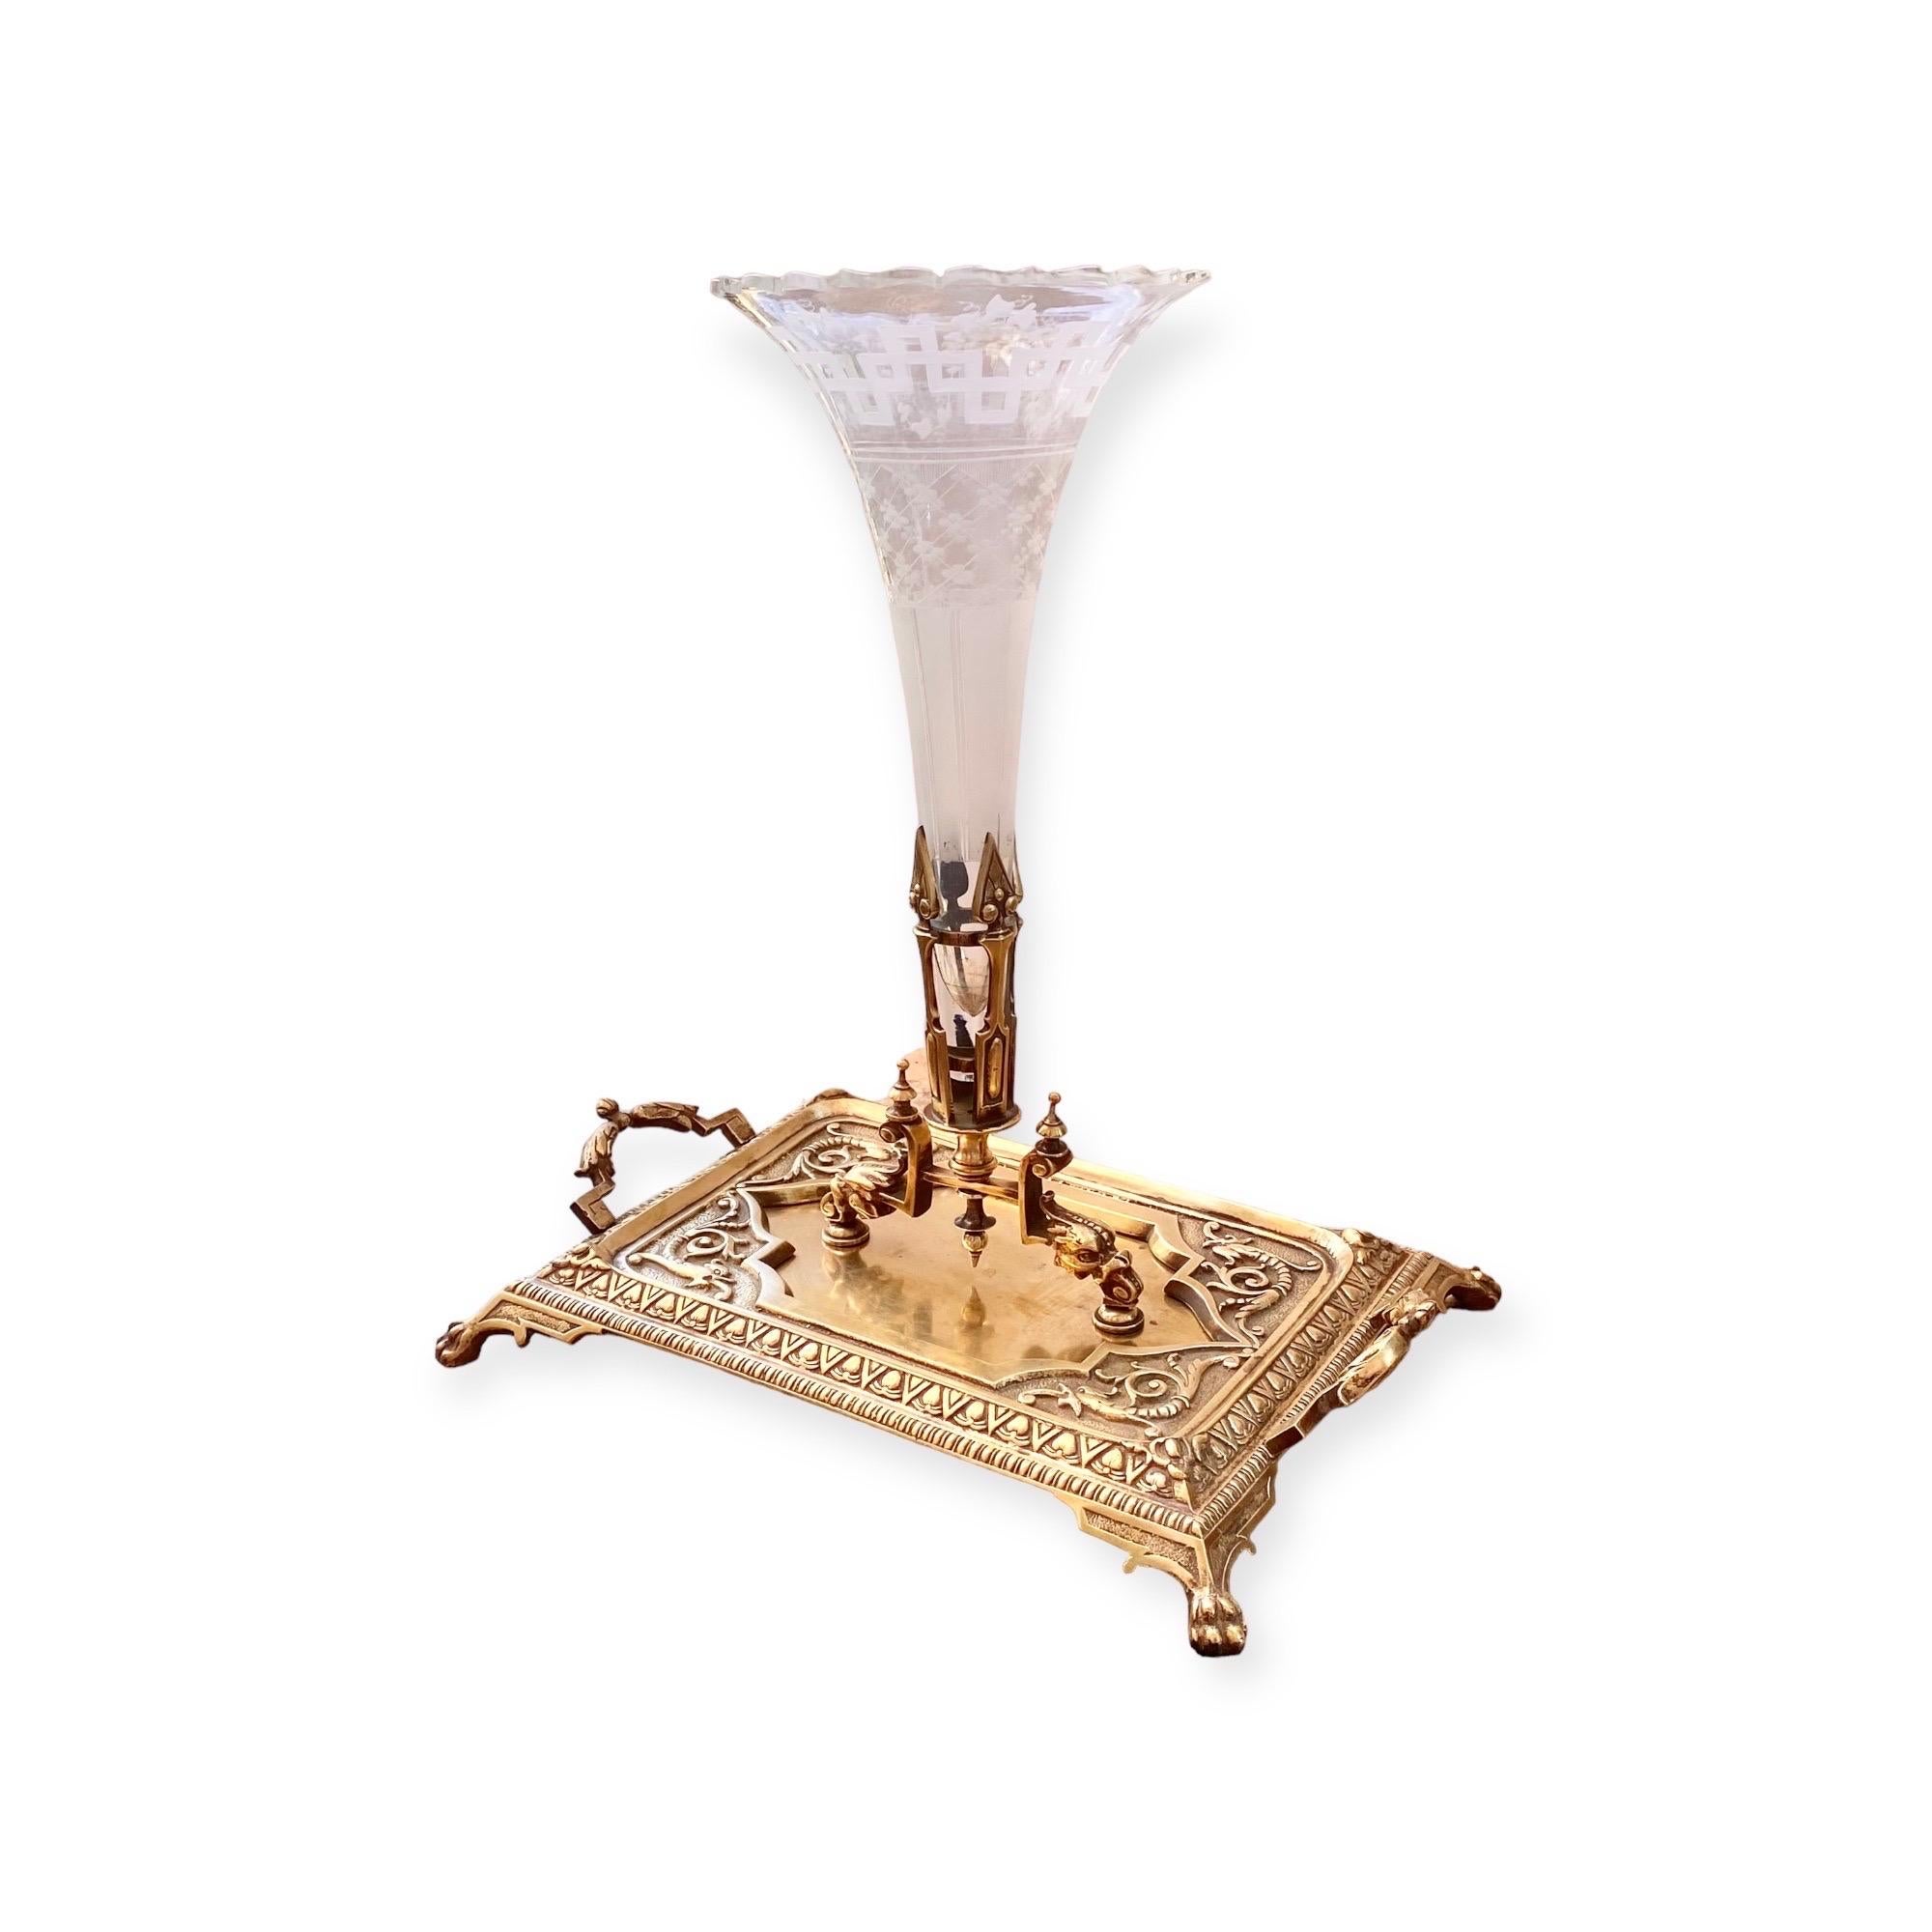 Remarquable plateau à cartes en laiton doré du XIXe siècle, accompagné d'un vase en cristal taillé et gravé, attribué à Ferdinand Barbedienne. 
De la période Napoléon Ill, avec des éléments finement moulés de dauphins, de rinceaux, d'anthemions et